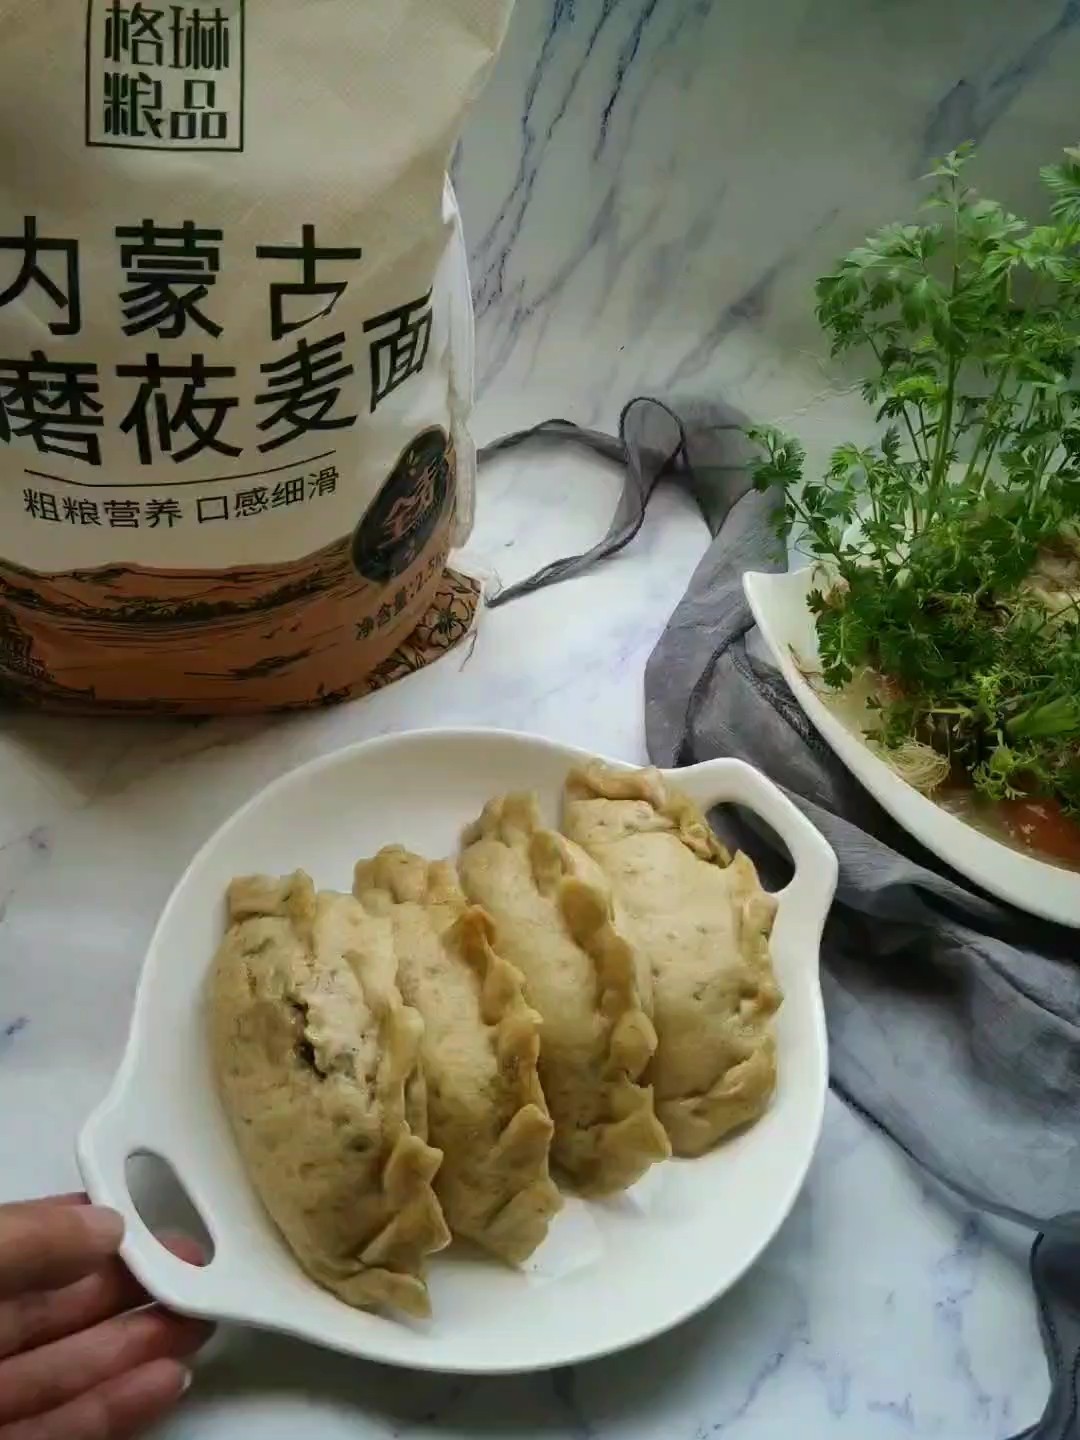 Steamed Vegetarian Dumplings with Noodles